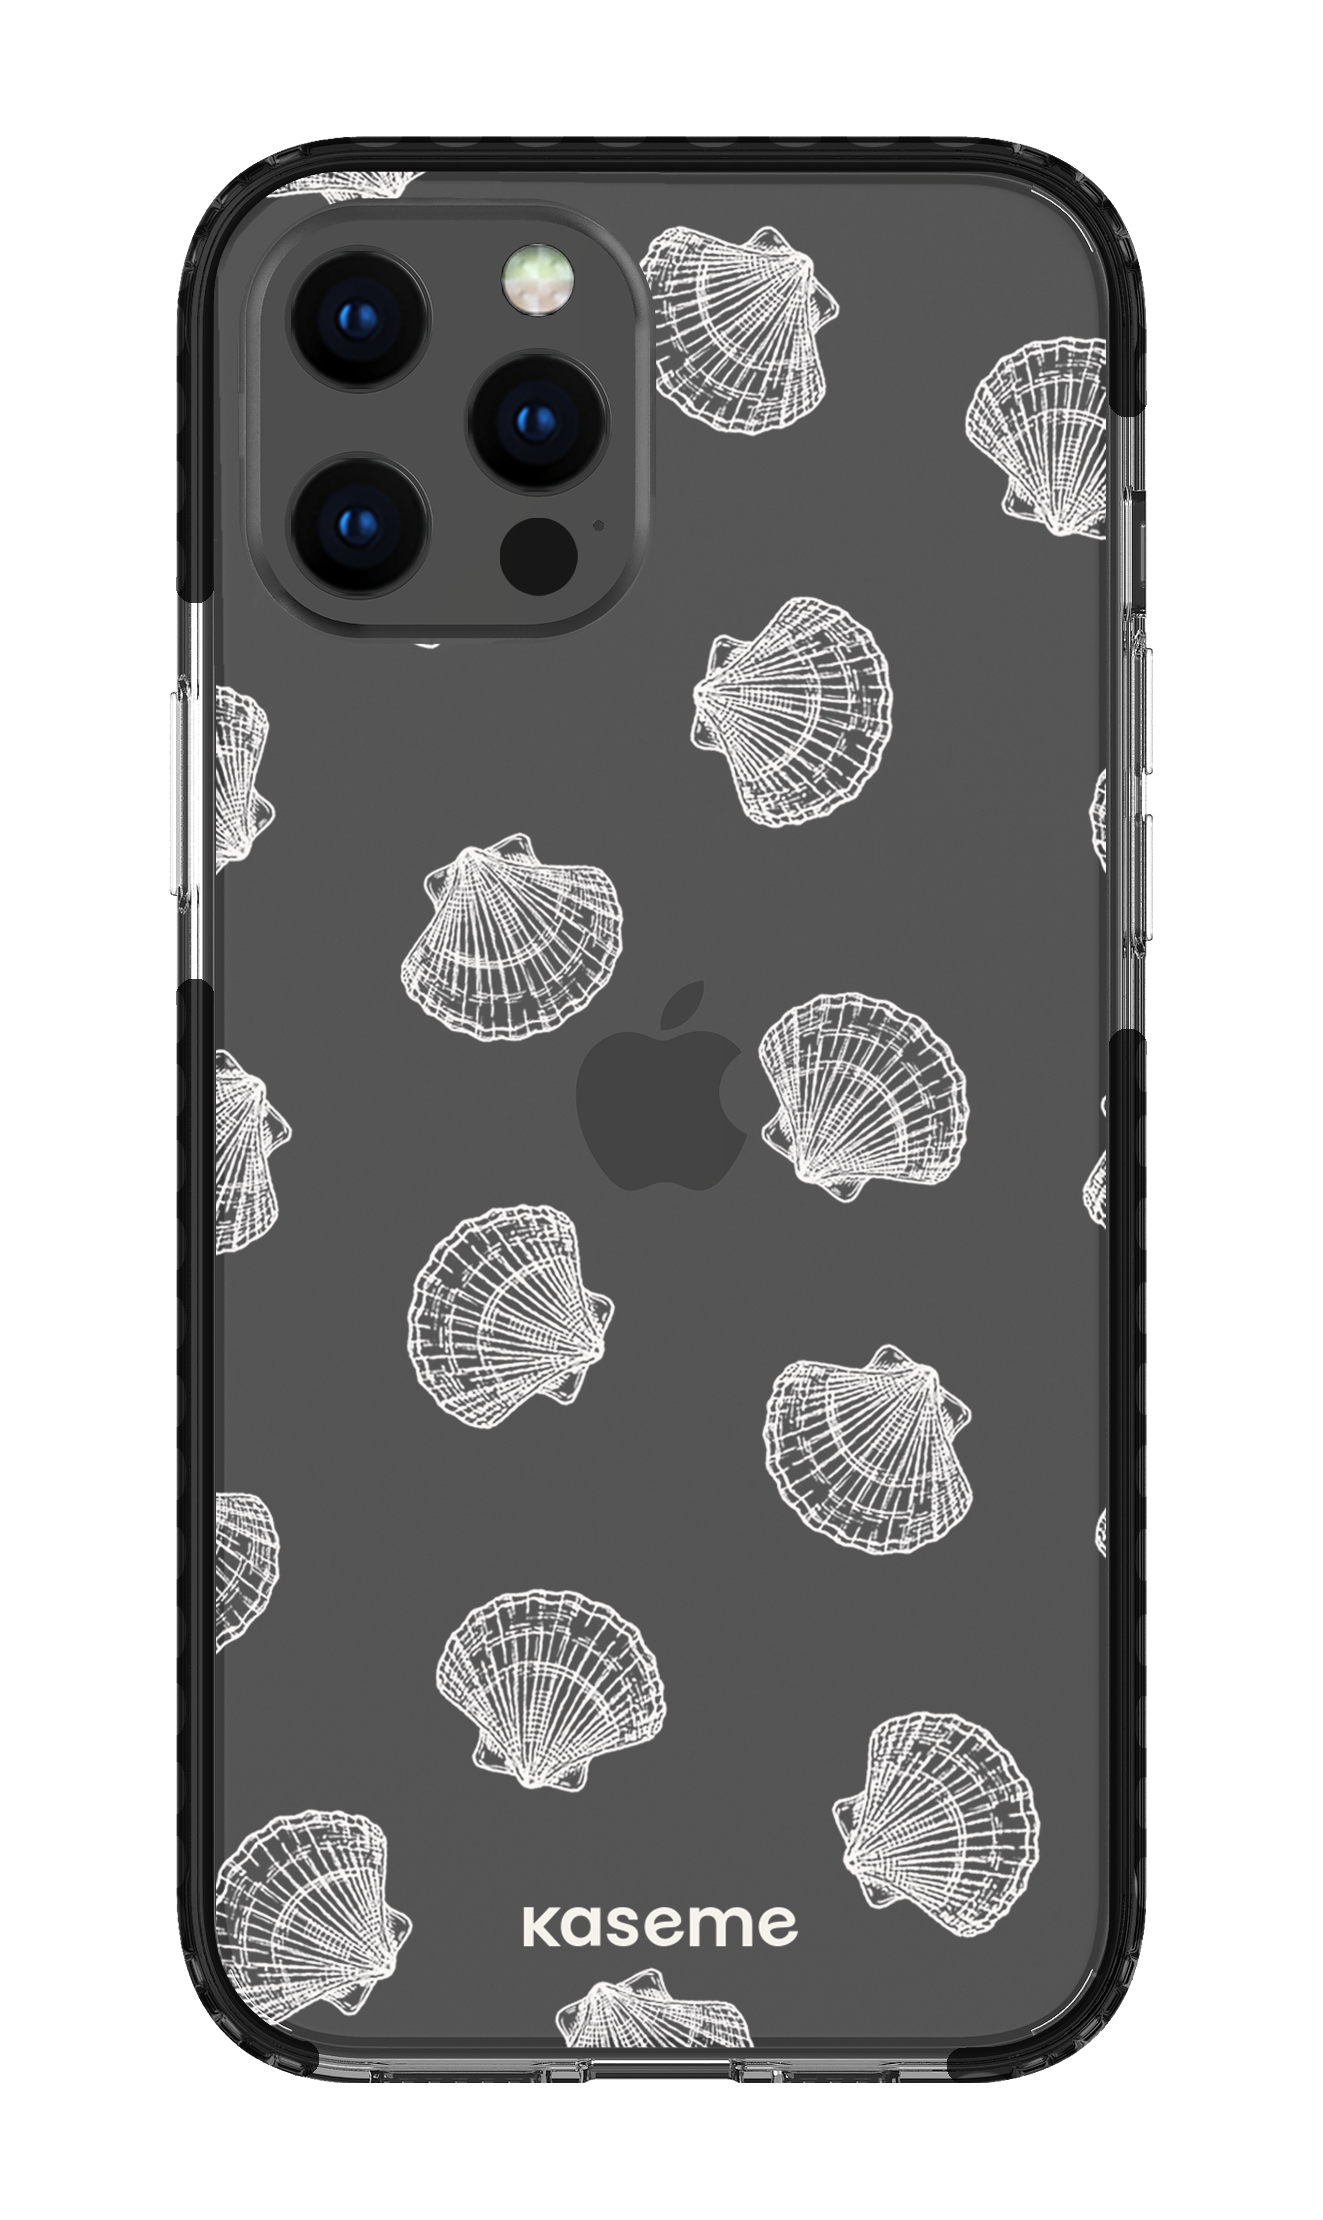 Bondi Beach clear case - iPhone 12 Pro Max